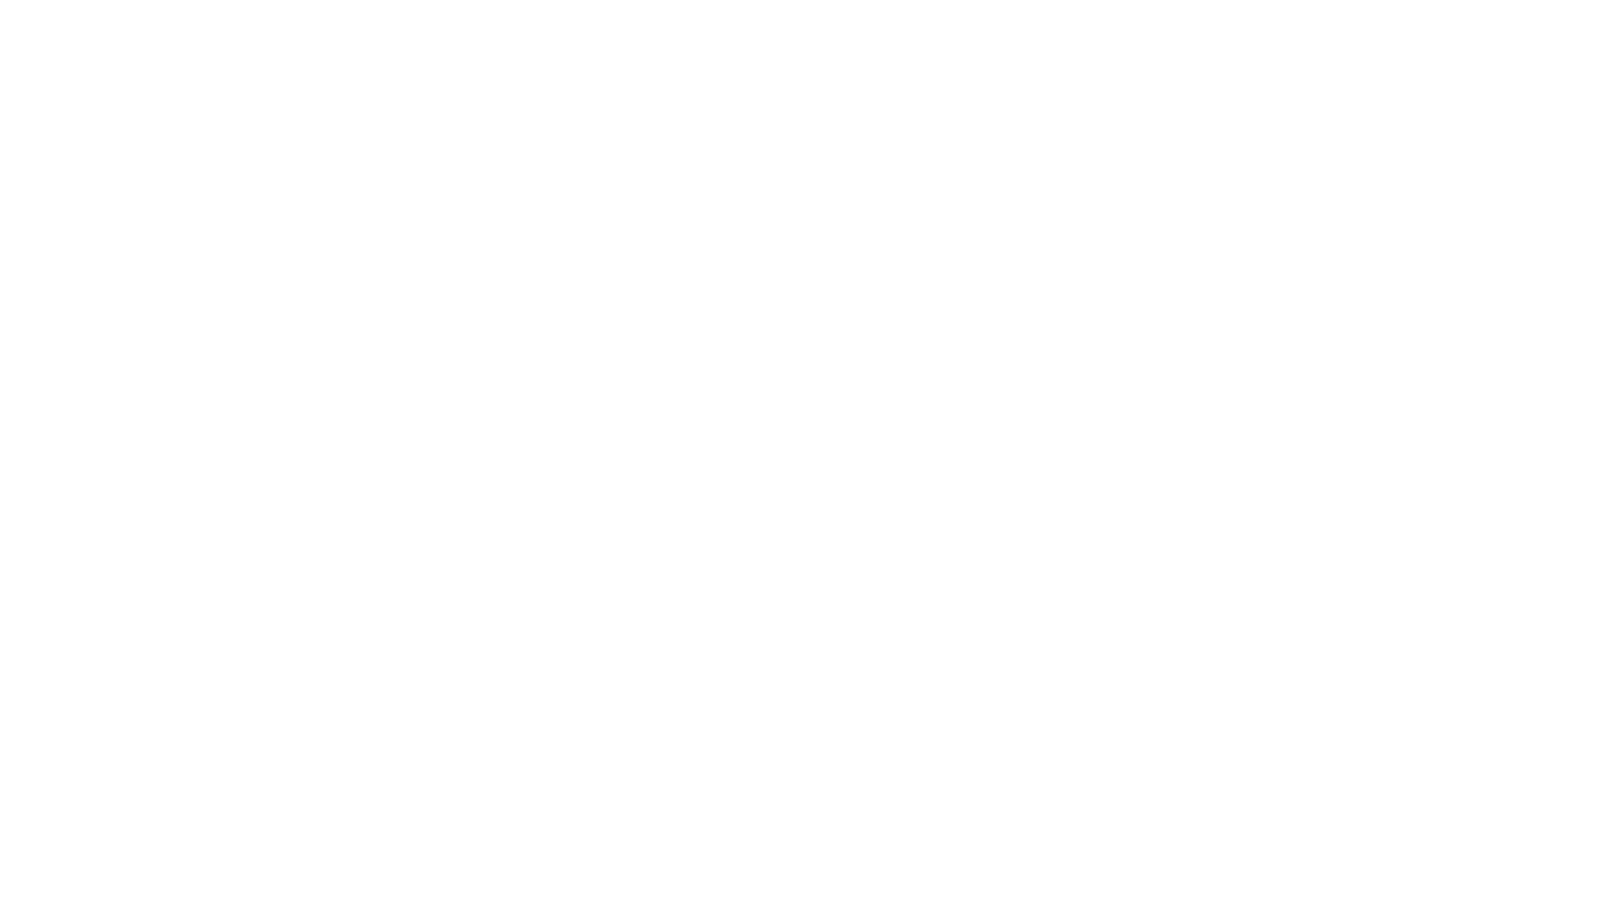 Cori serali della specie Pelophylax esculentus o rana verde.
La registrazione è ad opera di Ignazio Iparisi

Info spettrogramma:
- frequenza di campionamento = 44100 Hz
- scala delle frequenze = Mel
- FFT = 2048
- finestrazione = Hann